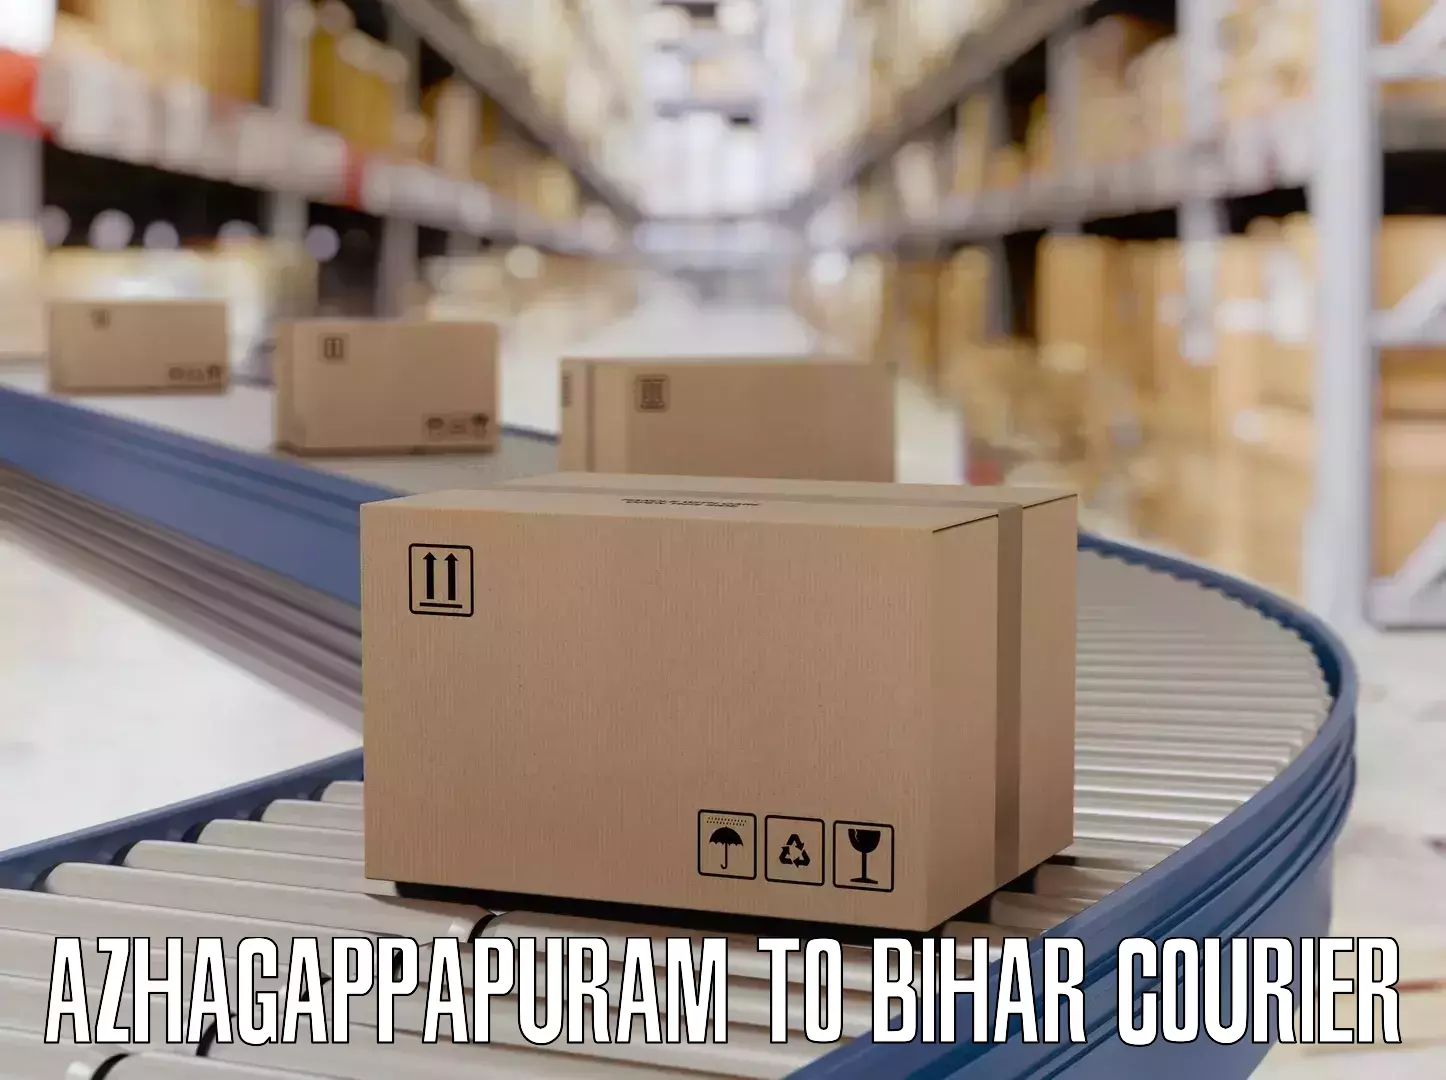 Luggage delivery optimization Azhagappapuram to Khodaganj